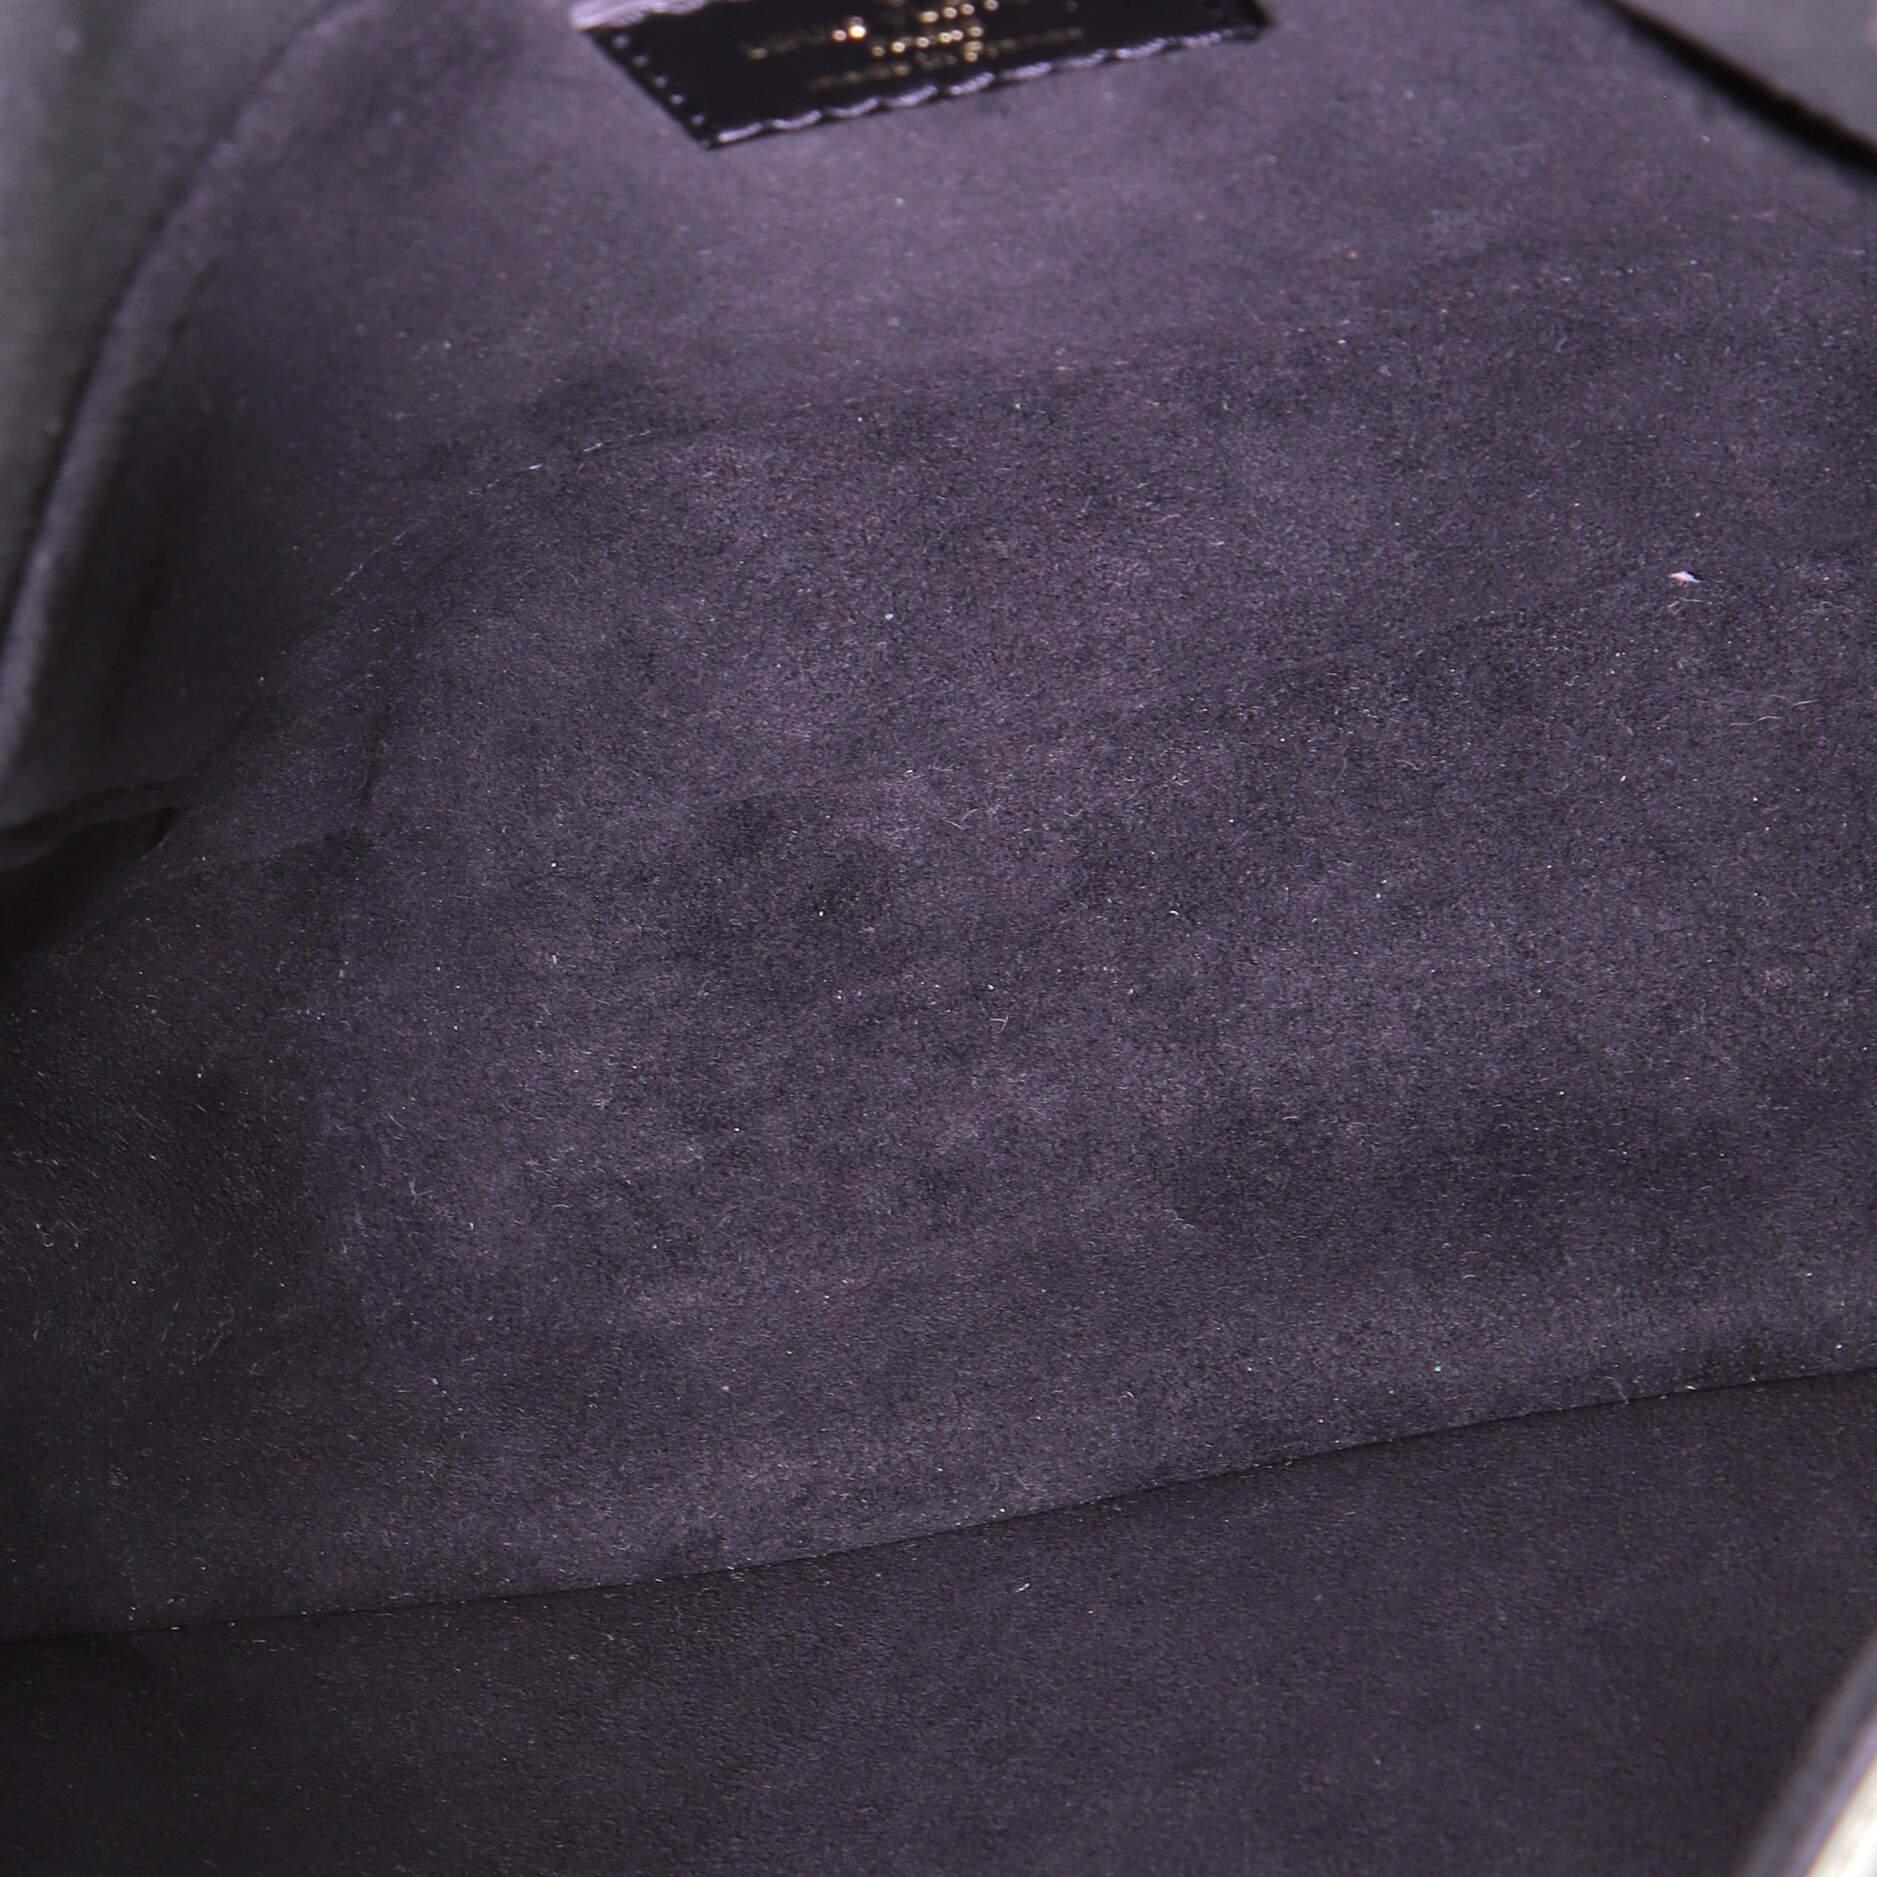 Black Louis Vuitton Neo Saumur Bag Limited Edition Since 1854 Monogram Jacquard